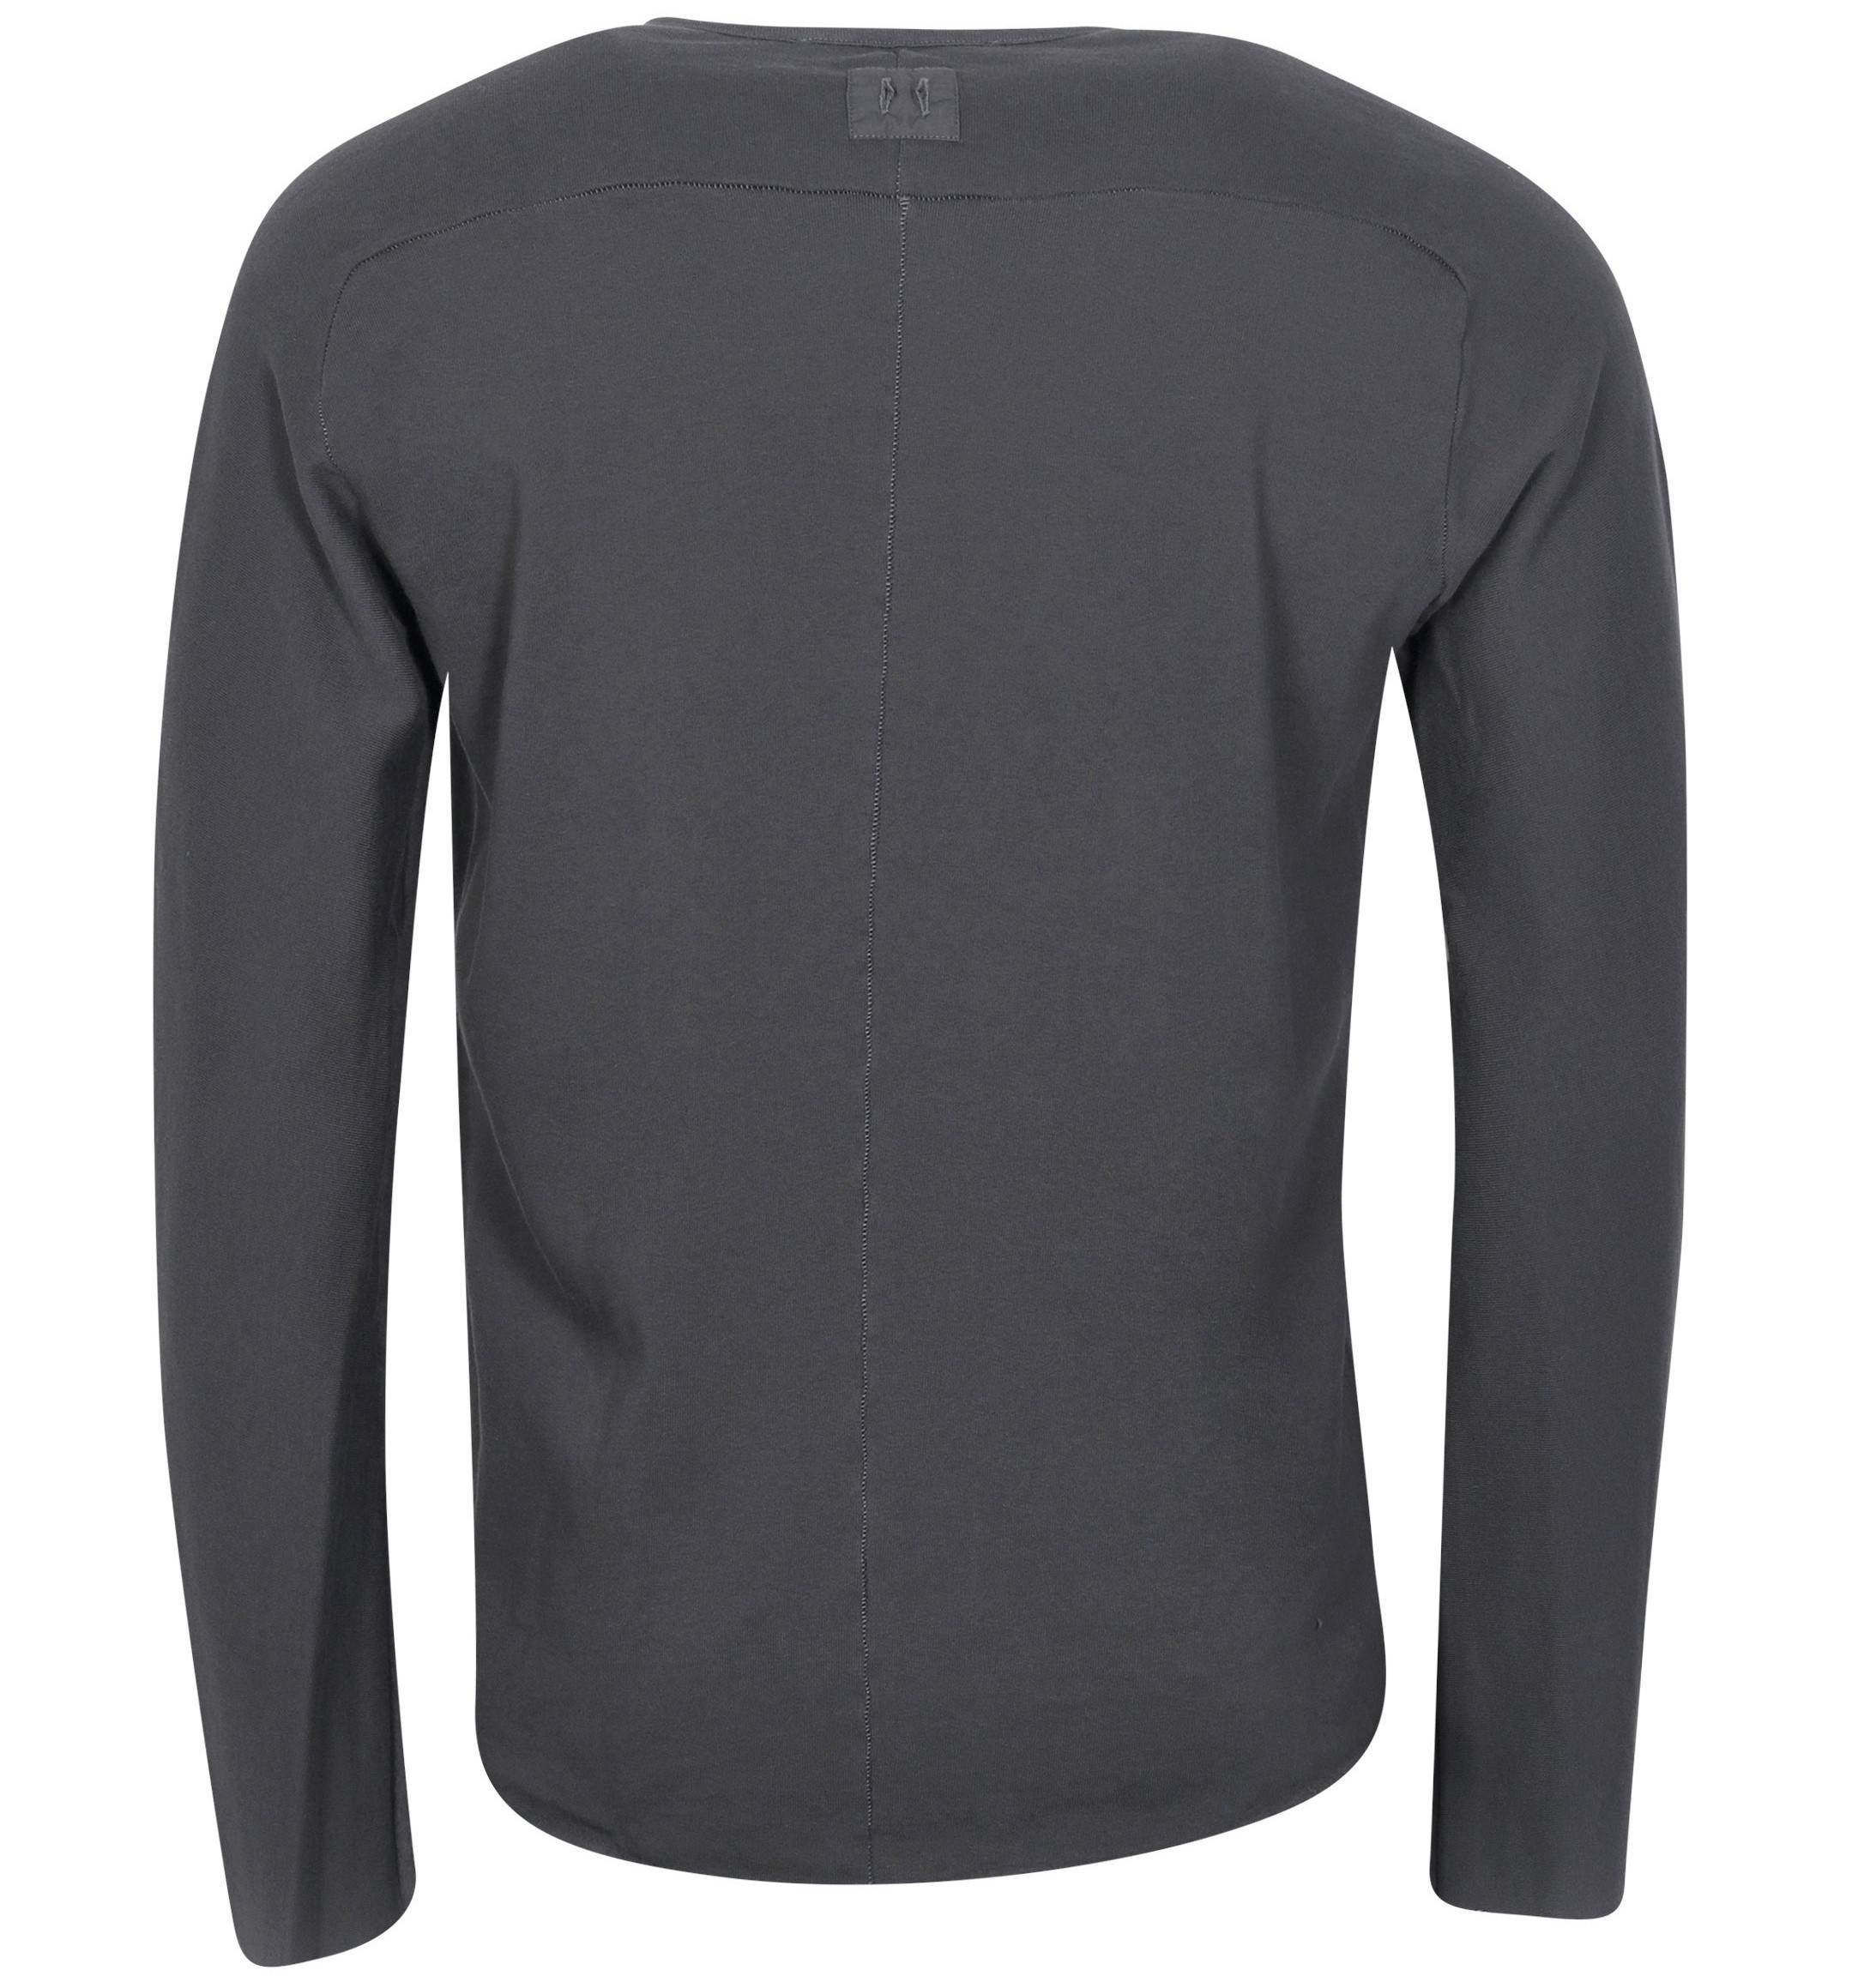 HANNES ROETHER Soft Cotton Sweatshirt in Dark Grey 2XL